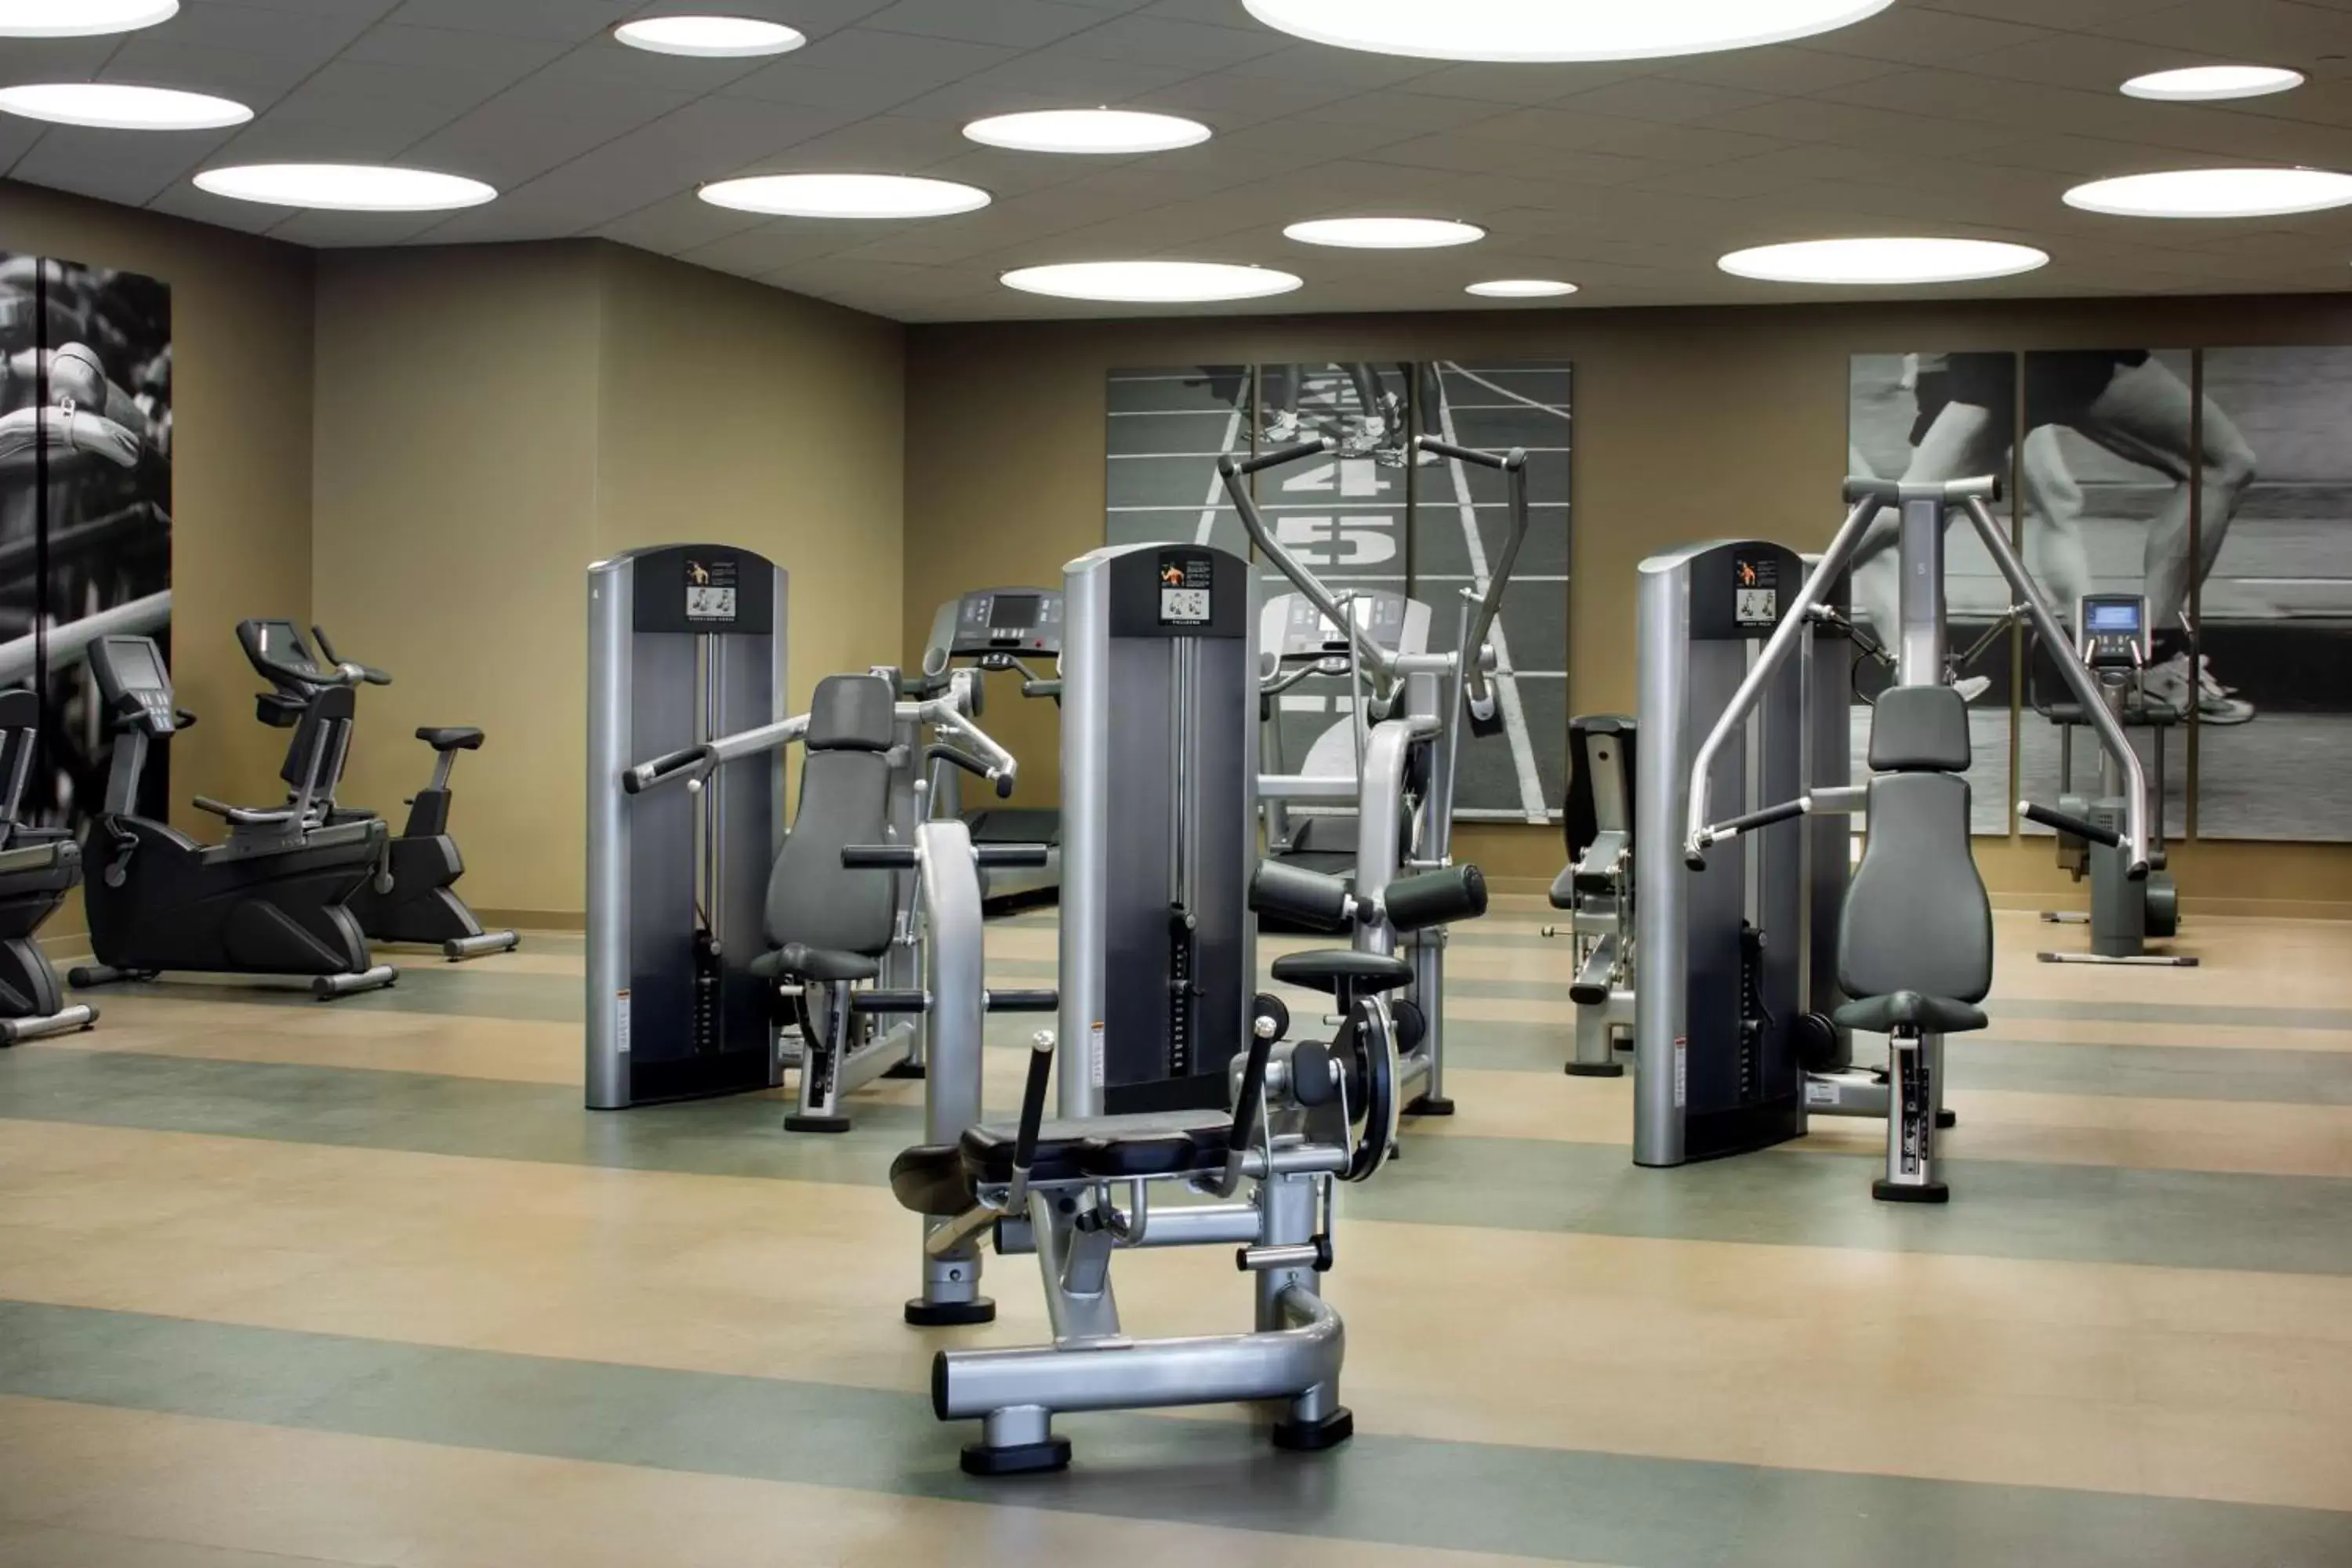 Fitness centre/facilities, Fitness Center/Facilities in Hyatt Regency Cincinnati